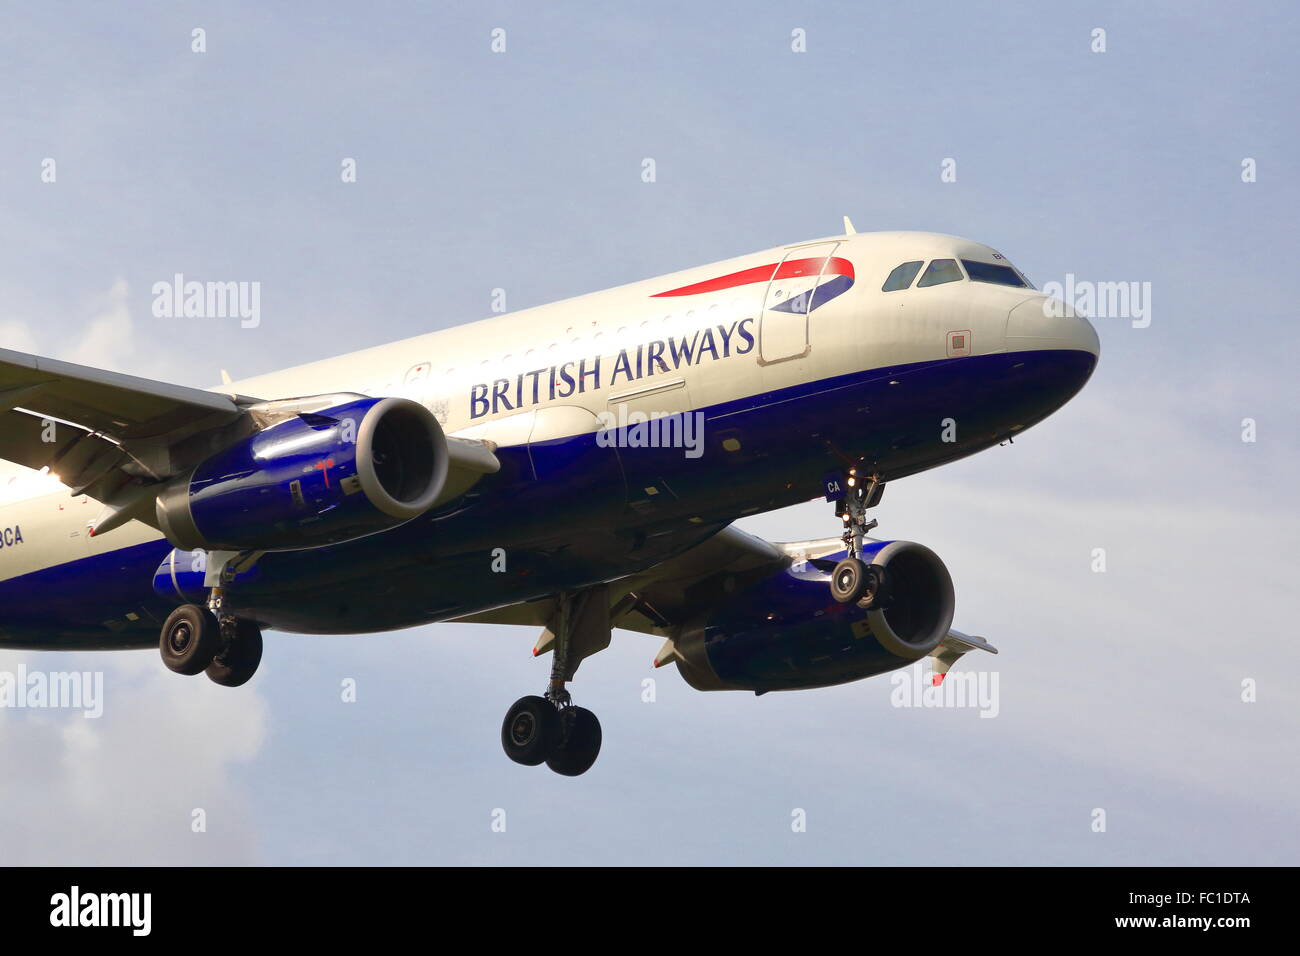 Eine British Airways Airbus A319-131 G-DBCA Landung in Heathrow Stockfoto